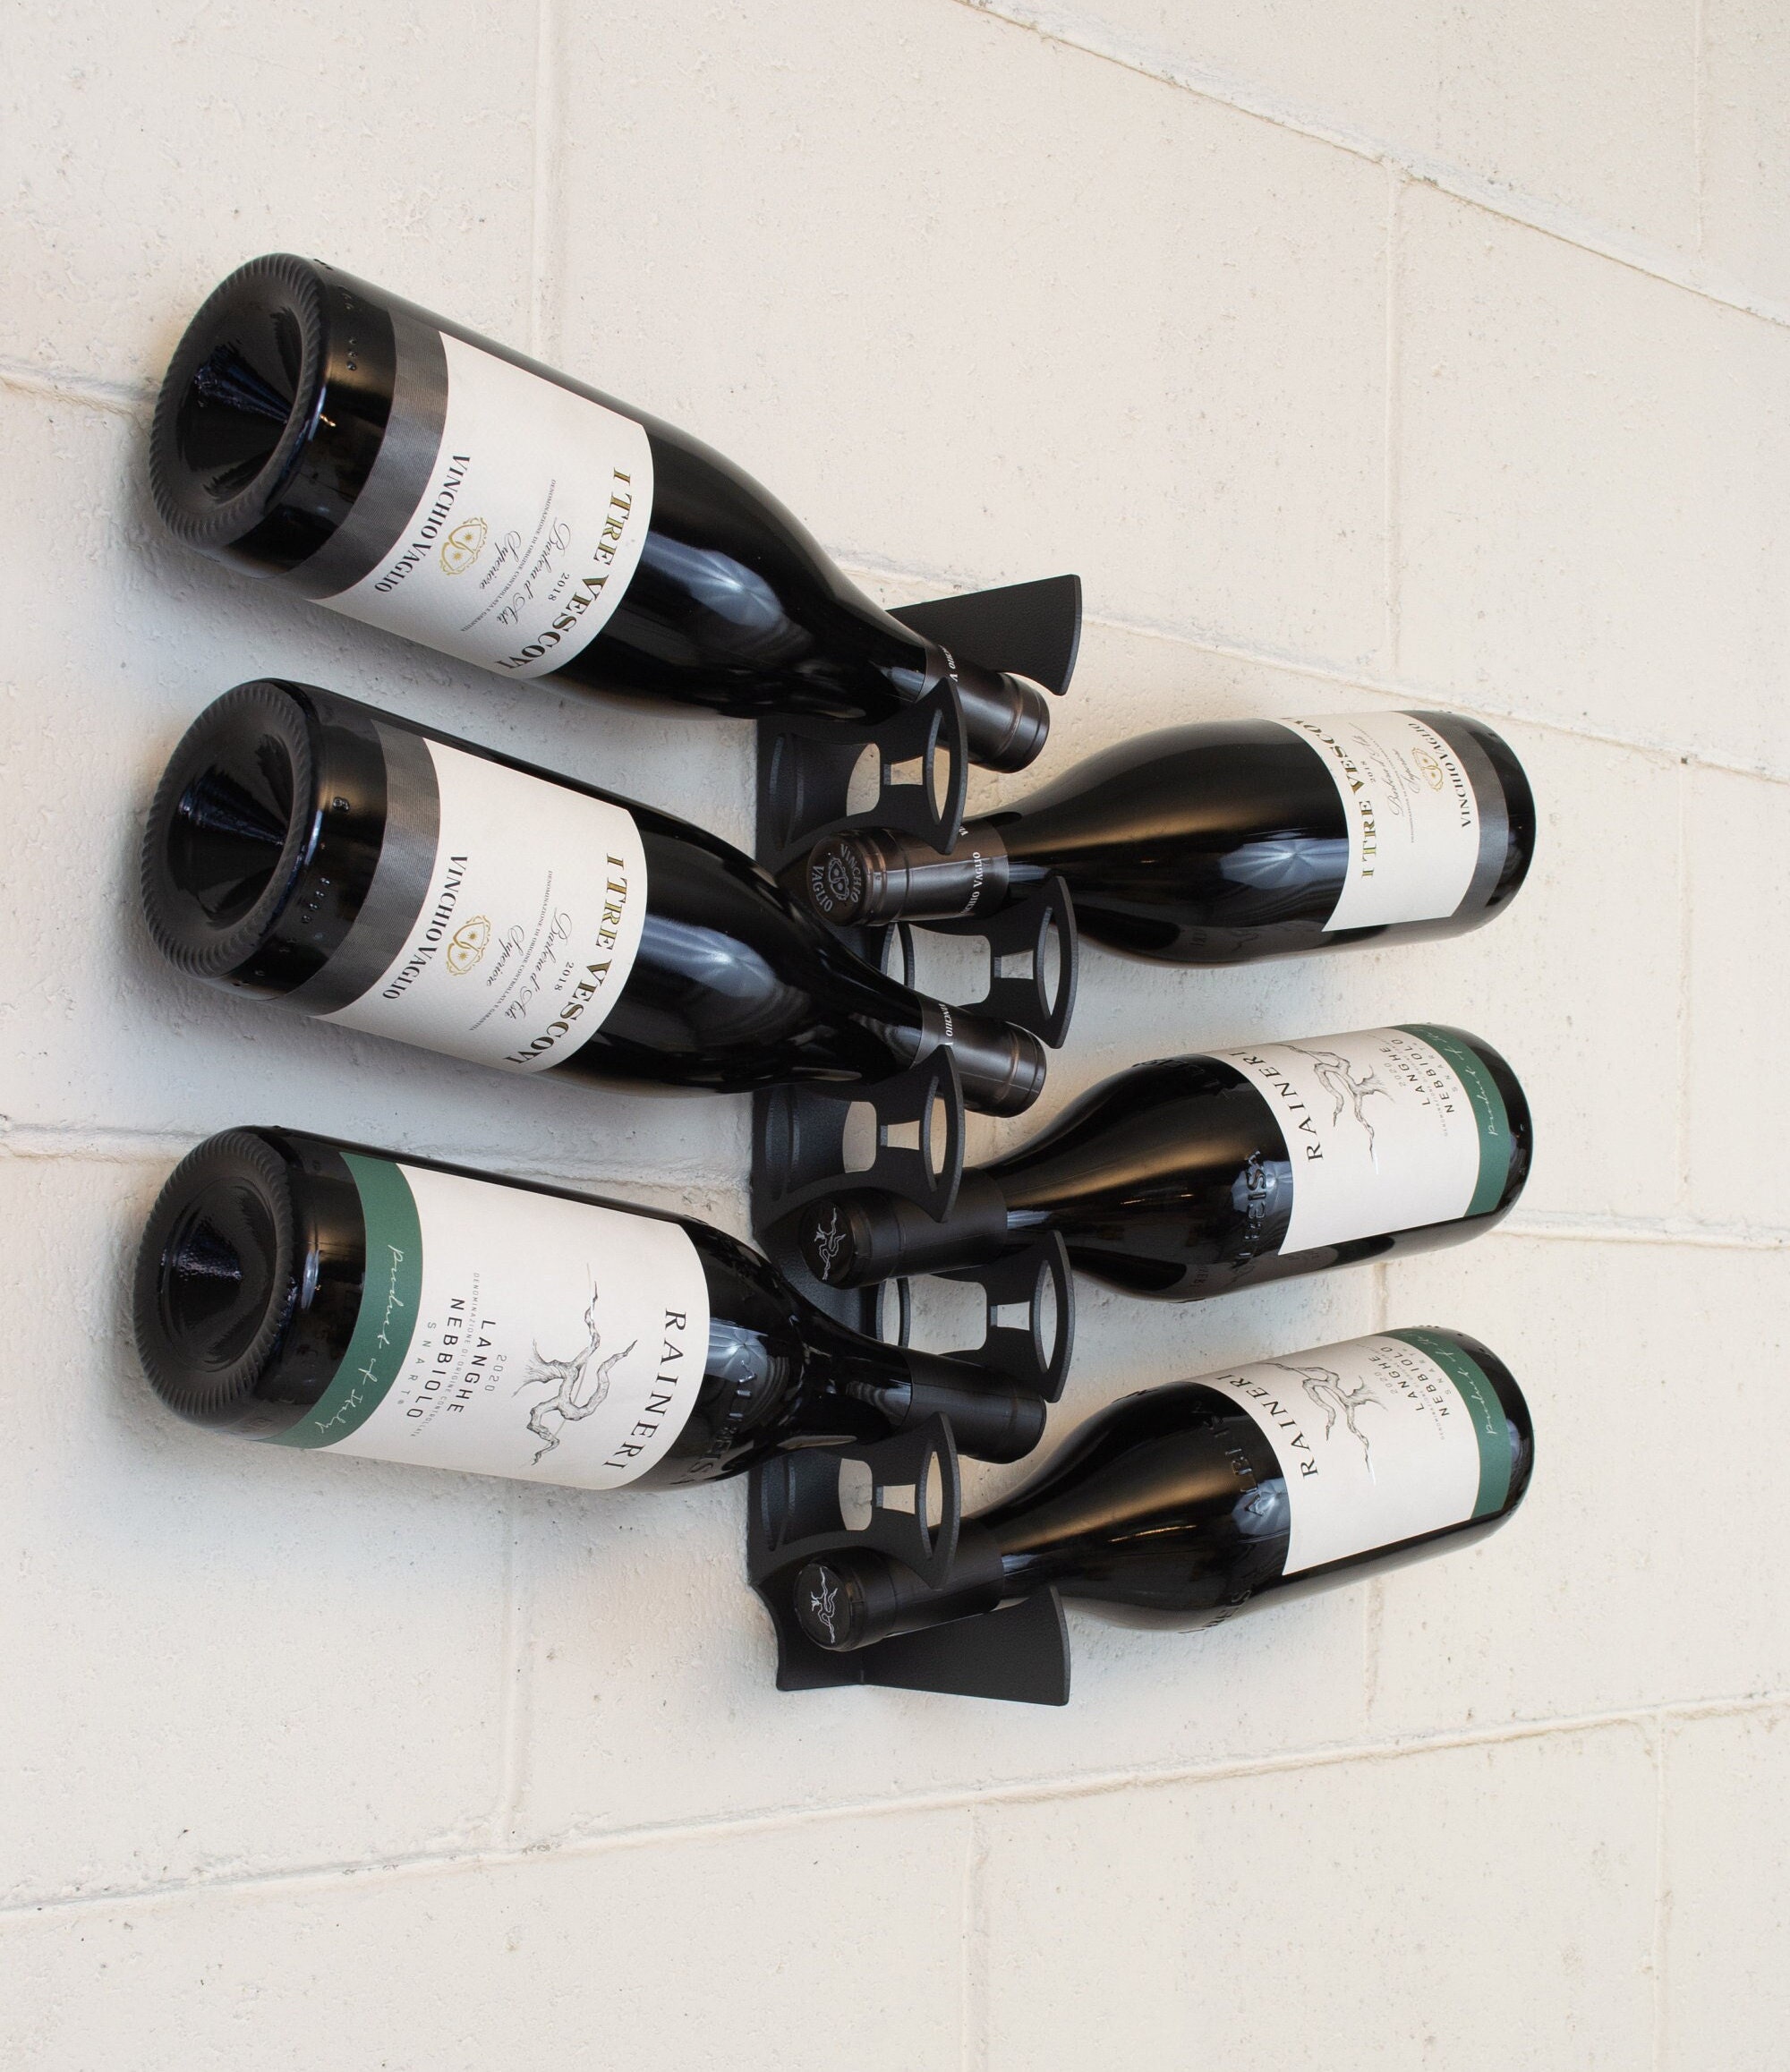 graal mini porte-bouteille de vin mural - 6 bouteilles